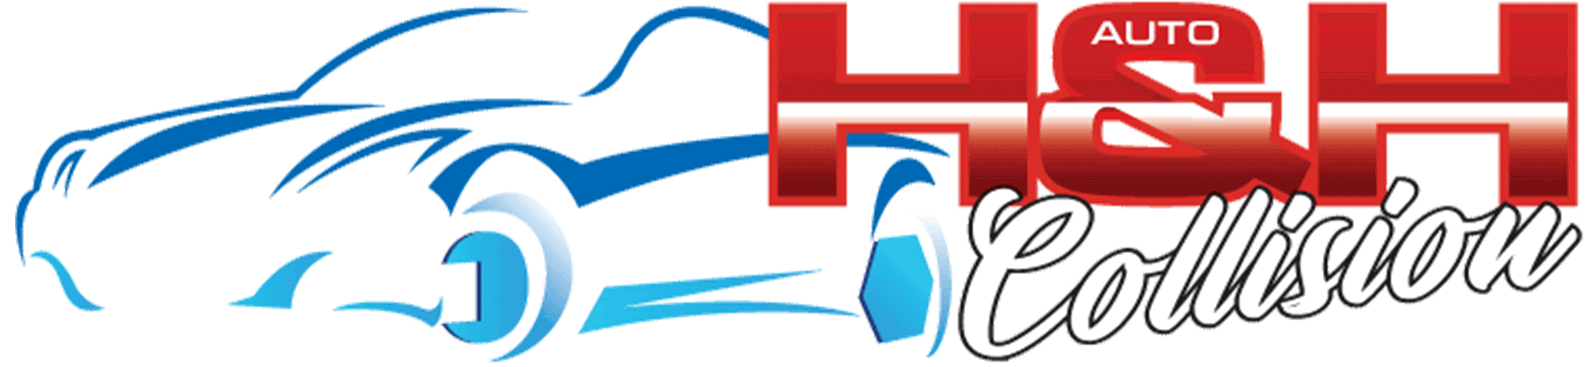 H&H Collision Shop Logo